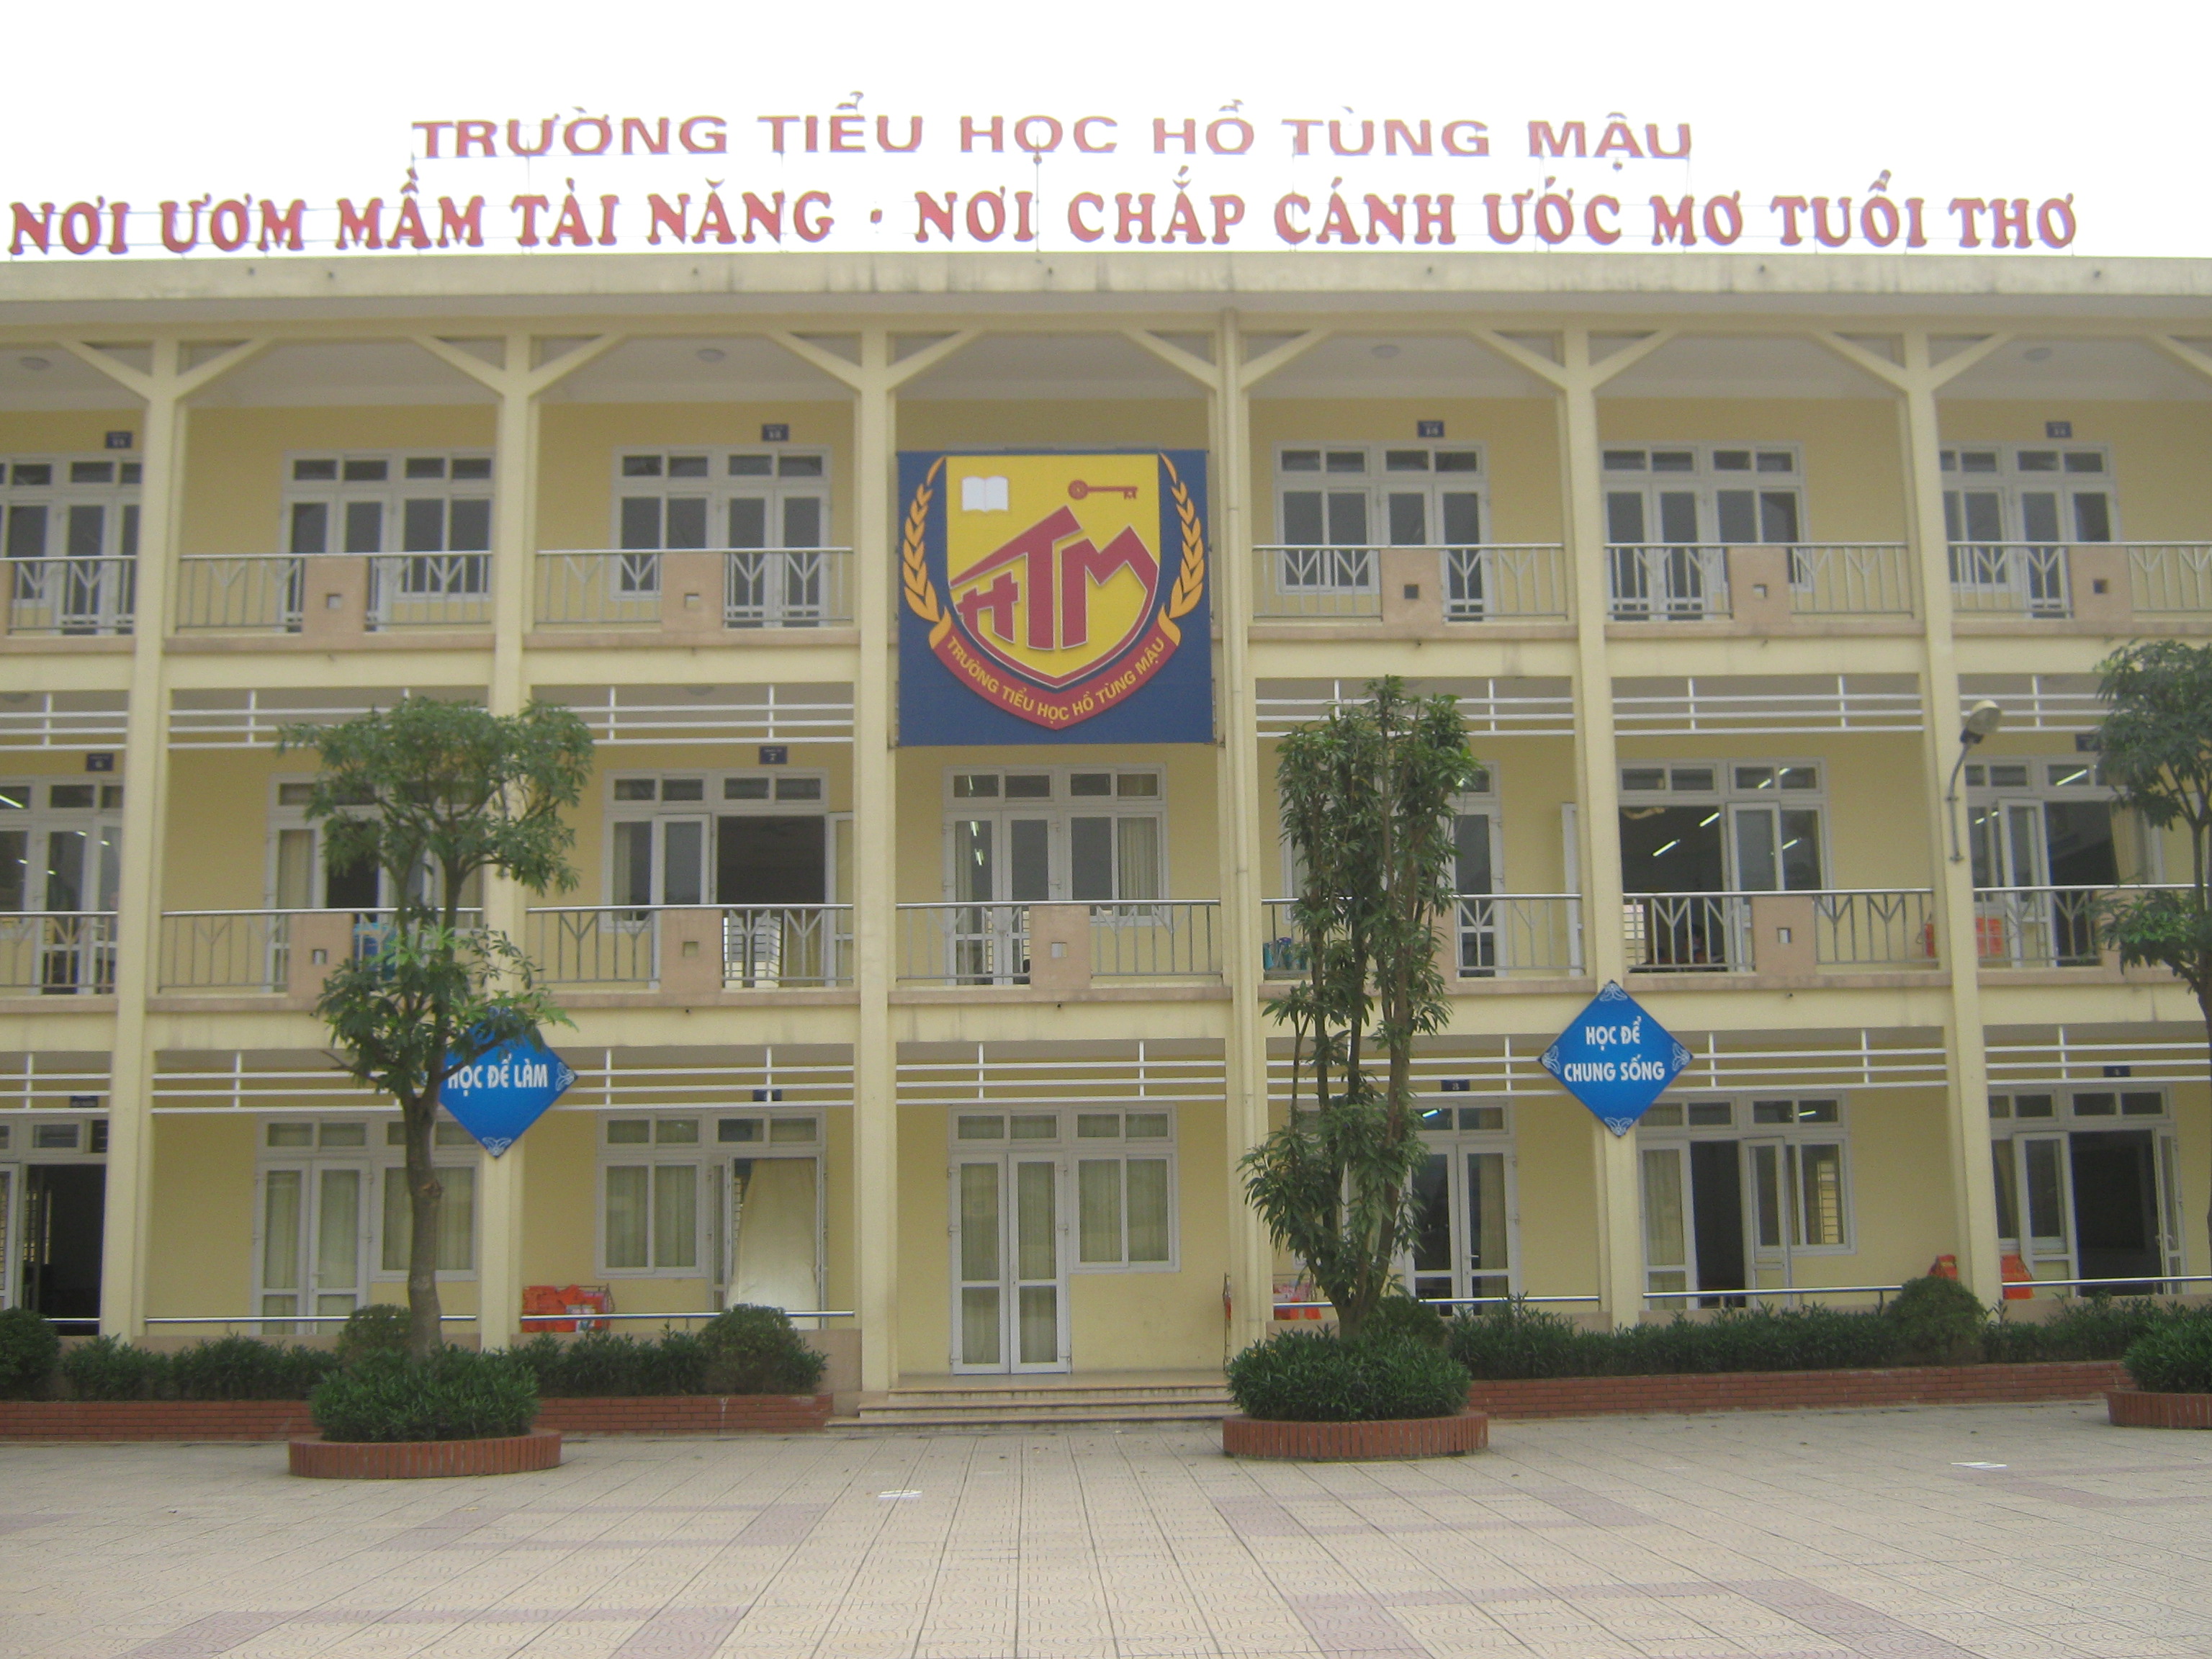 Hồ Tùng Mậu - Tiểu học công lập quận Bắc Từ Liêm, Hà Nội (Ảnh: Haiduongblog)